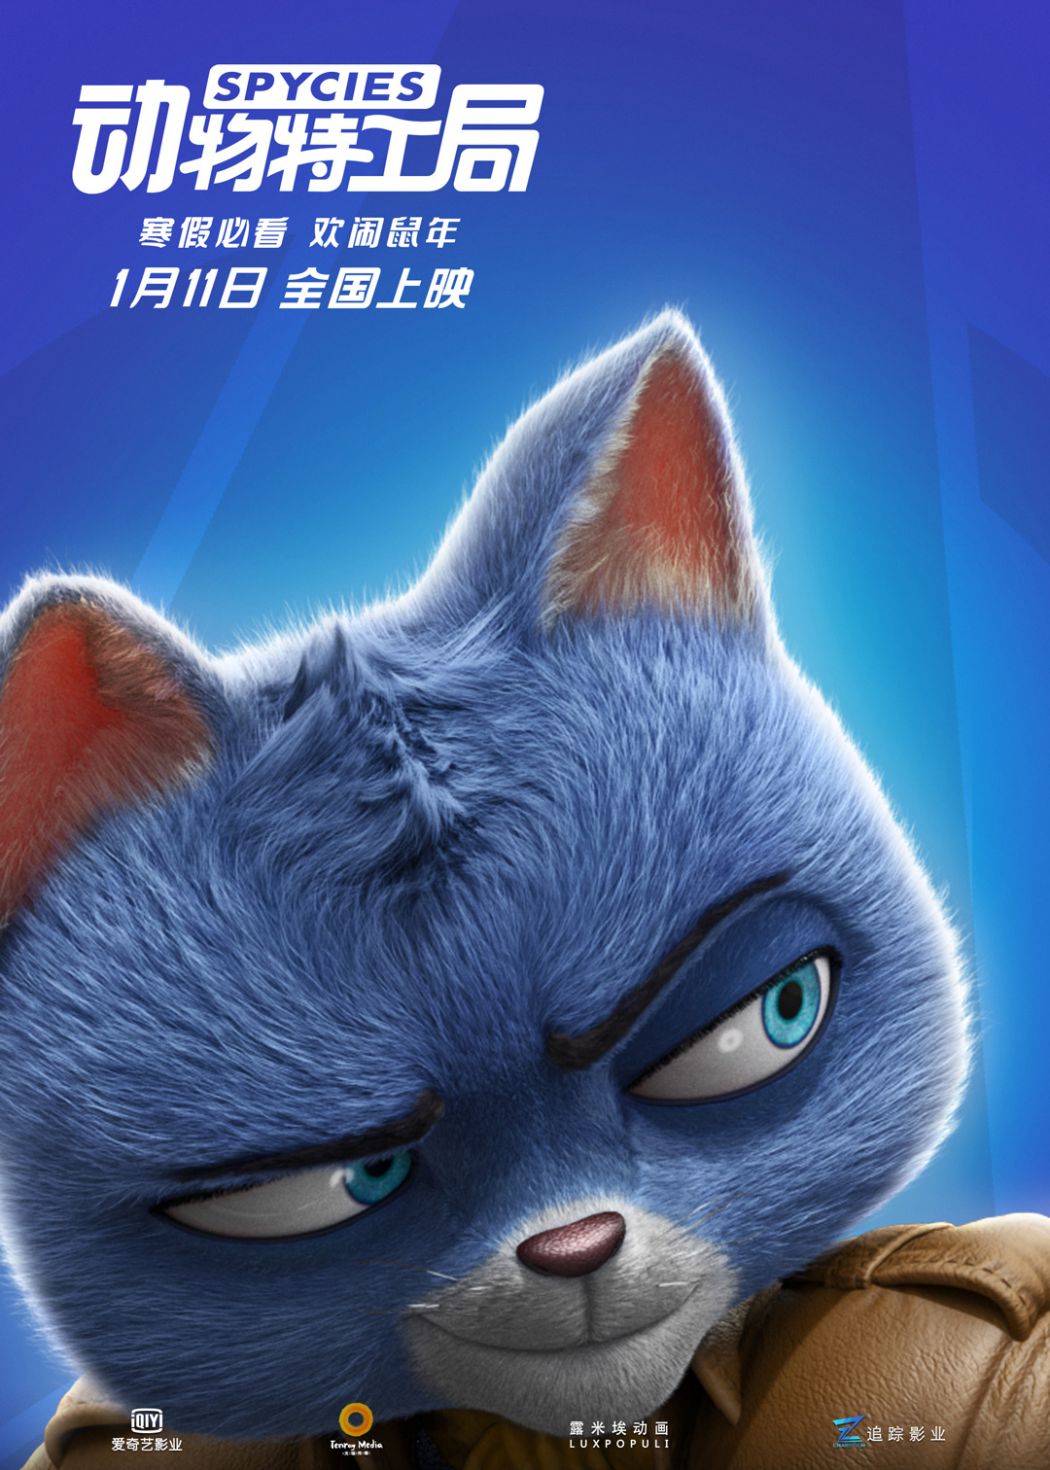 《动物特工局》曝光 “动物特工”角色海报 中国元素接轨国际水准